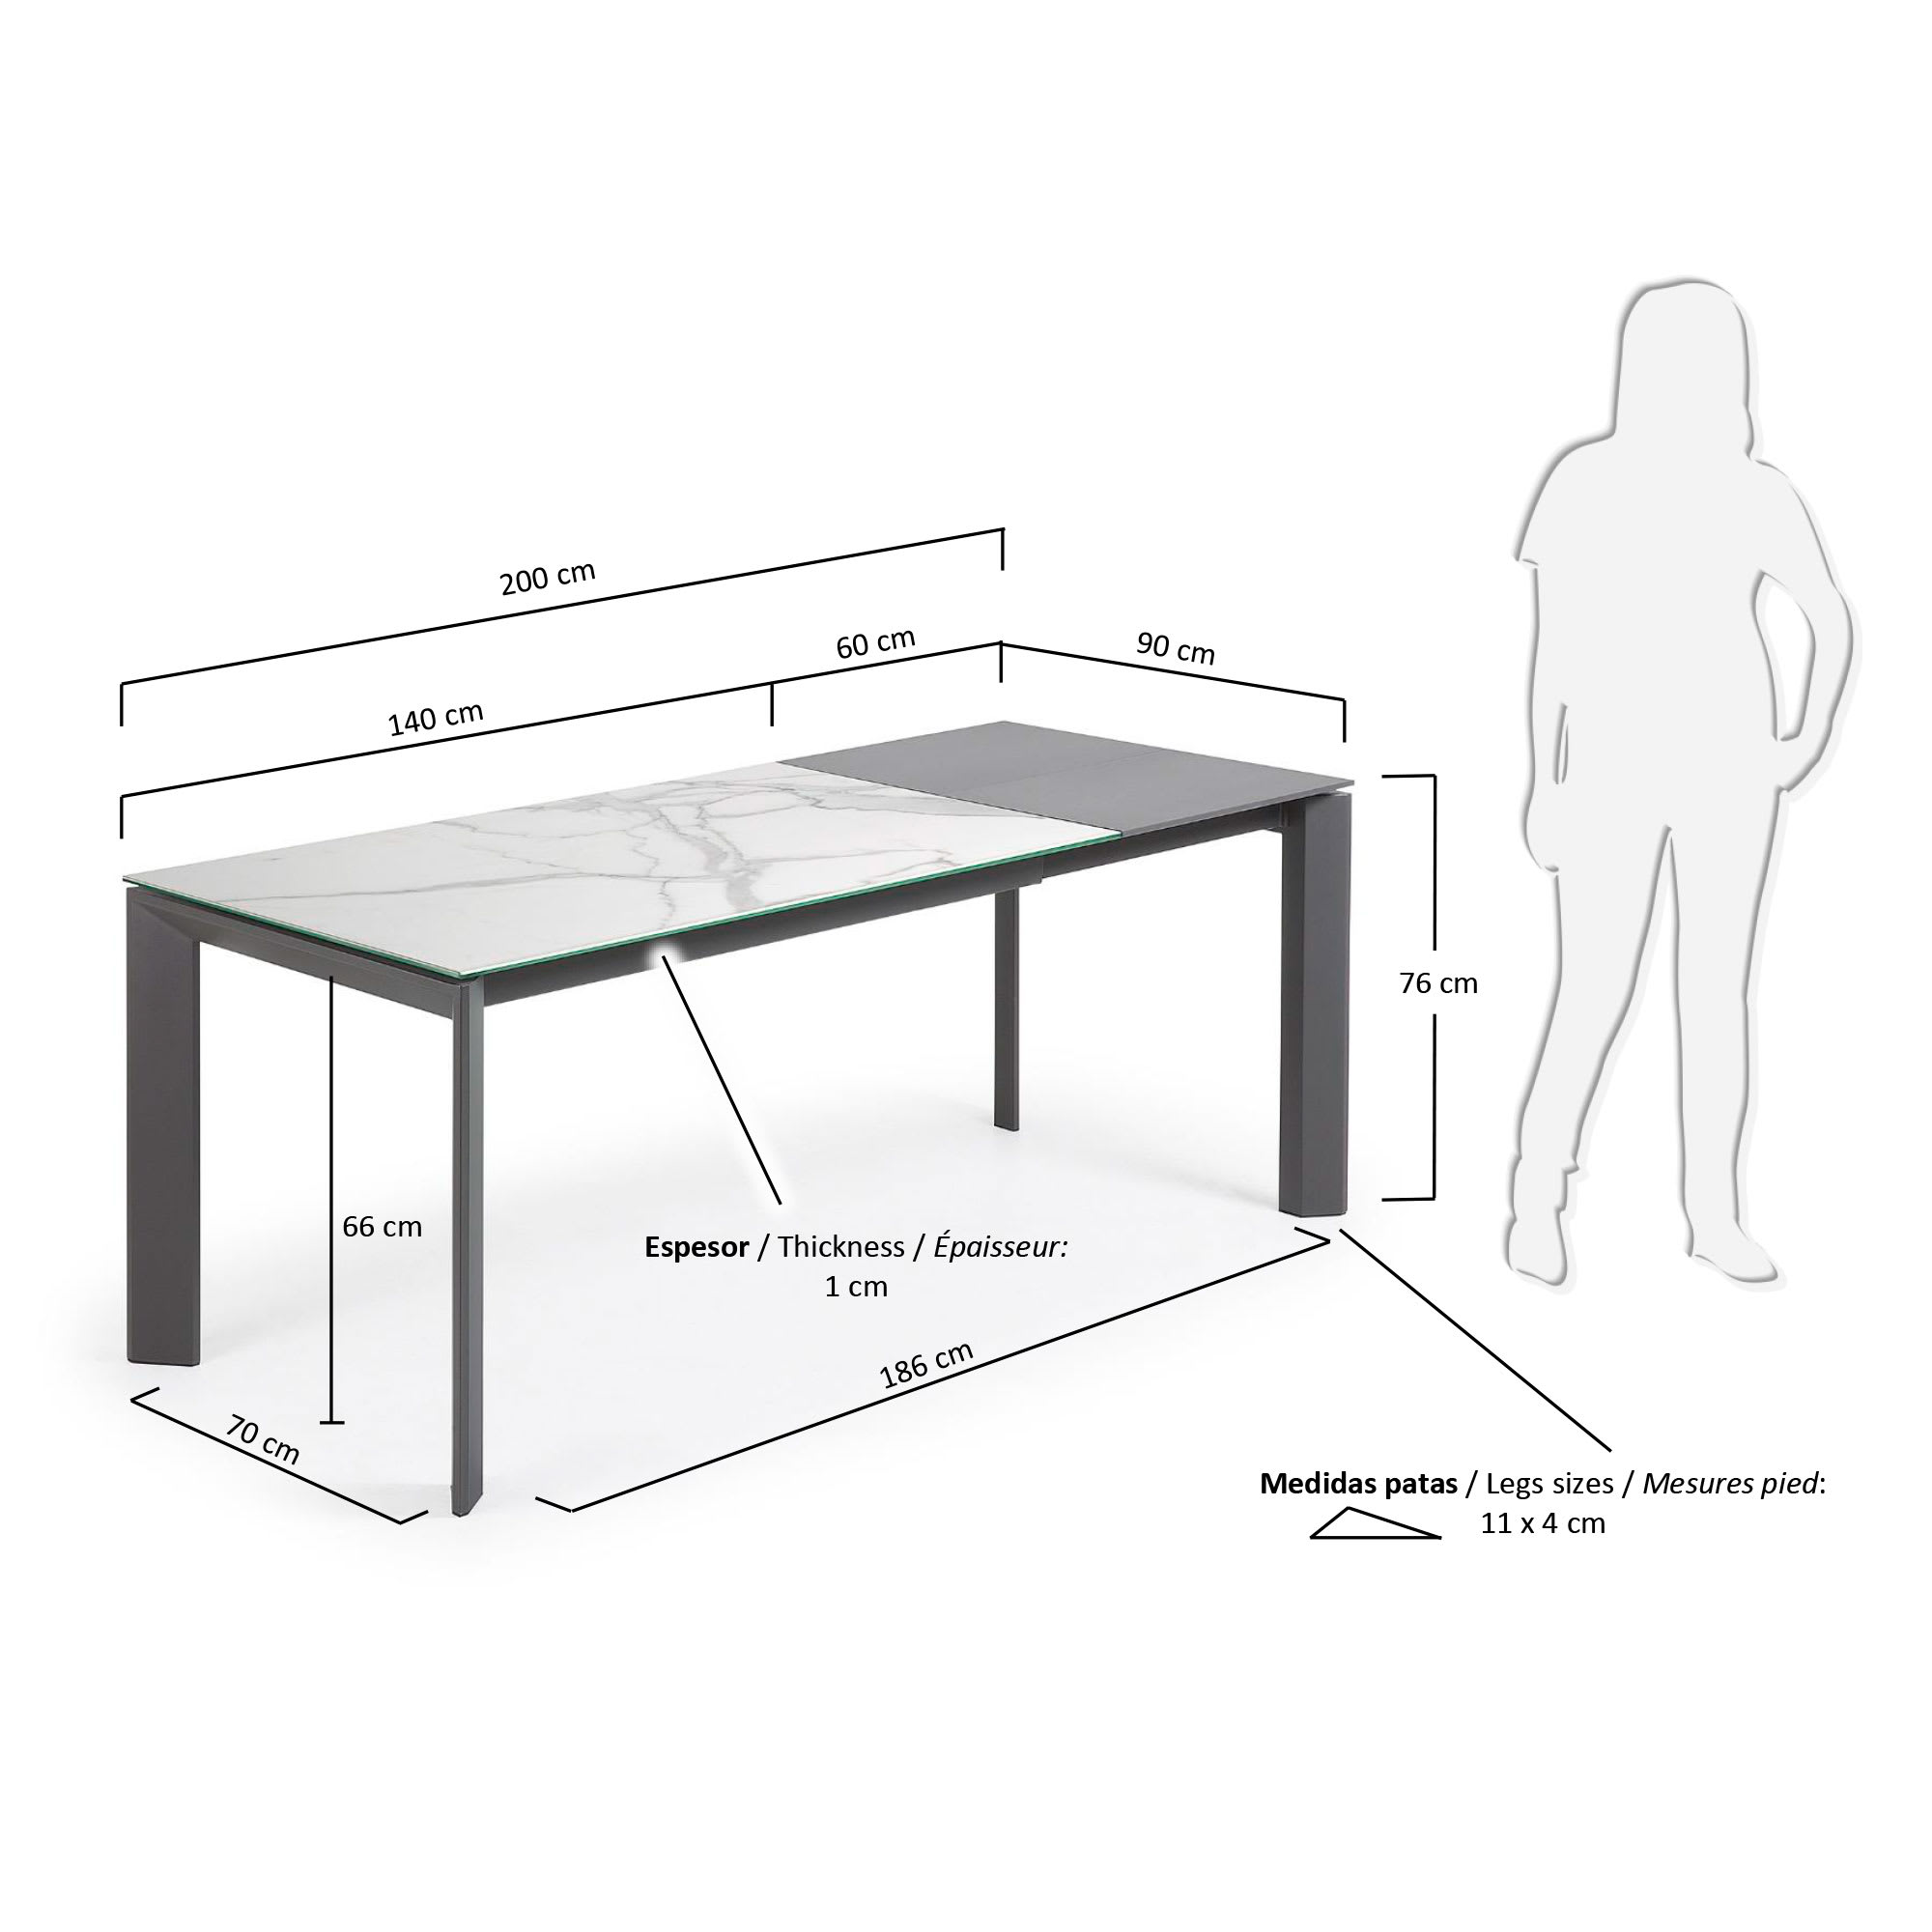 엑시스 세라믹 확장형 테이블 KB(90 x 140-200cm) - 크기